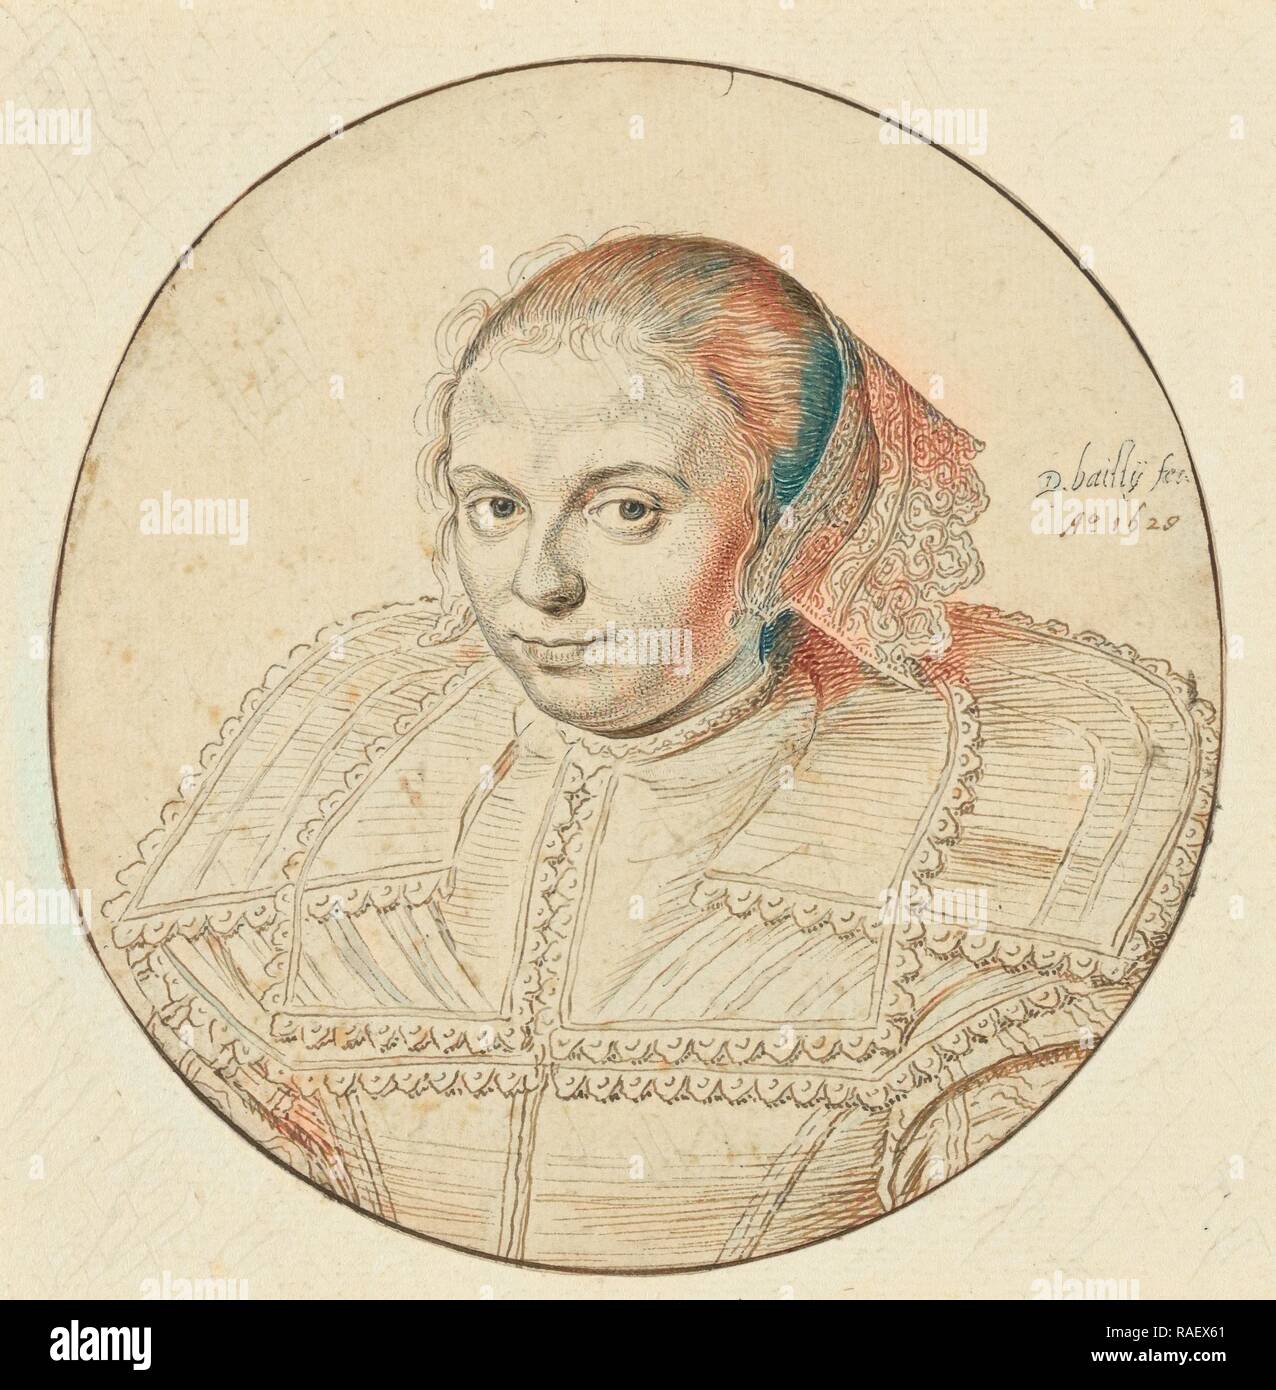 Ritratto di una donna, David Bailly (Olandese, 1584 - 1657), Paesi Bassi, 1629, penna e marrone chiaro e scuro inchiostro, framing reinventato Foto Stock